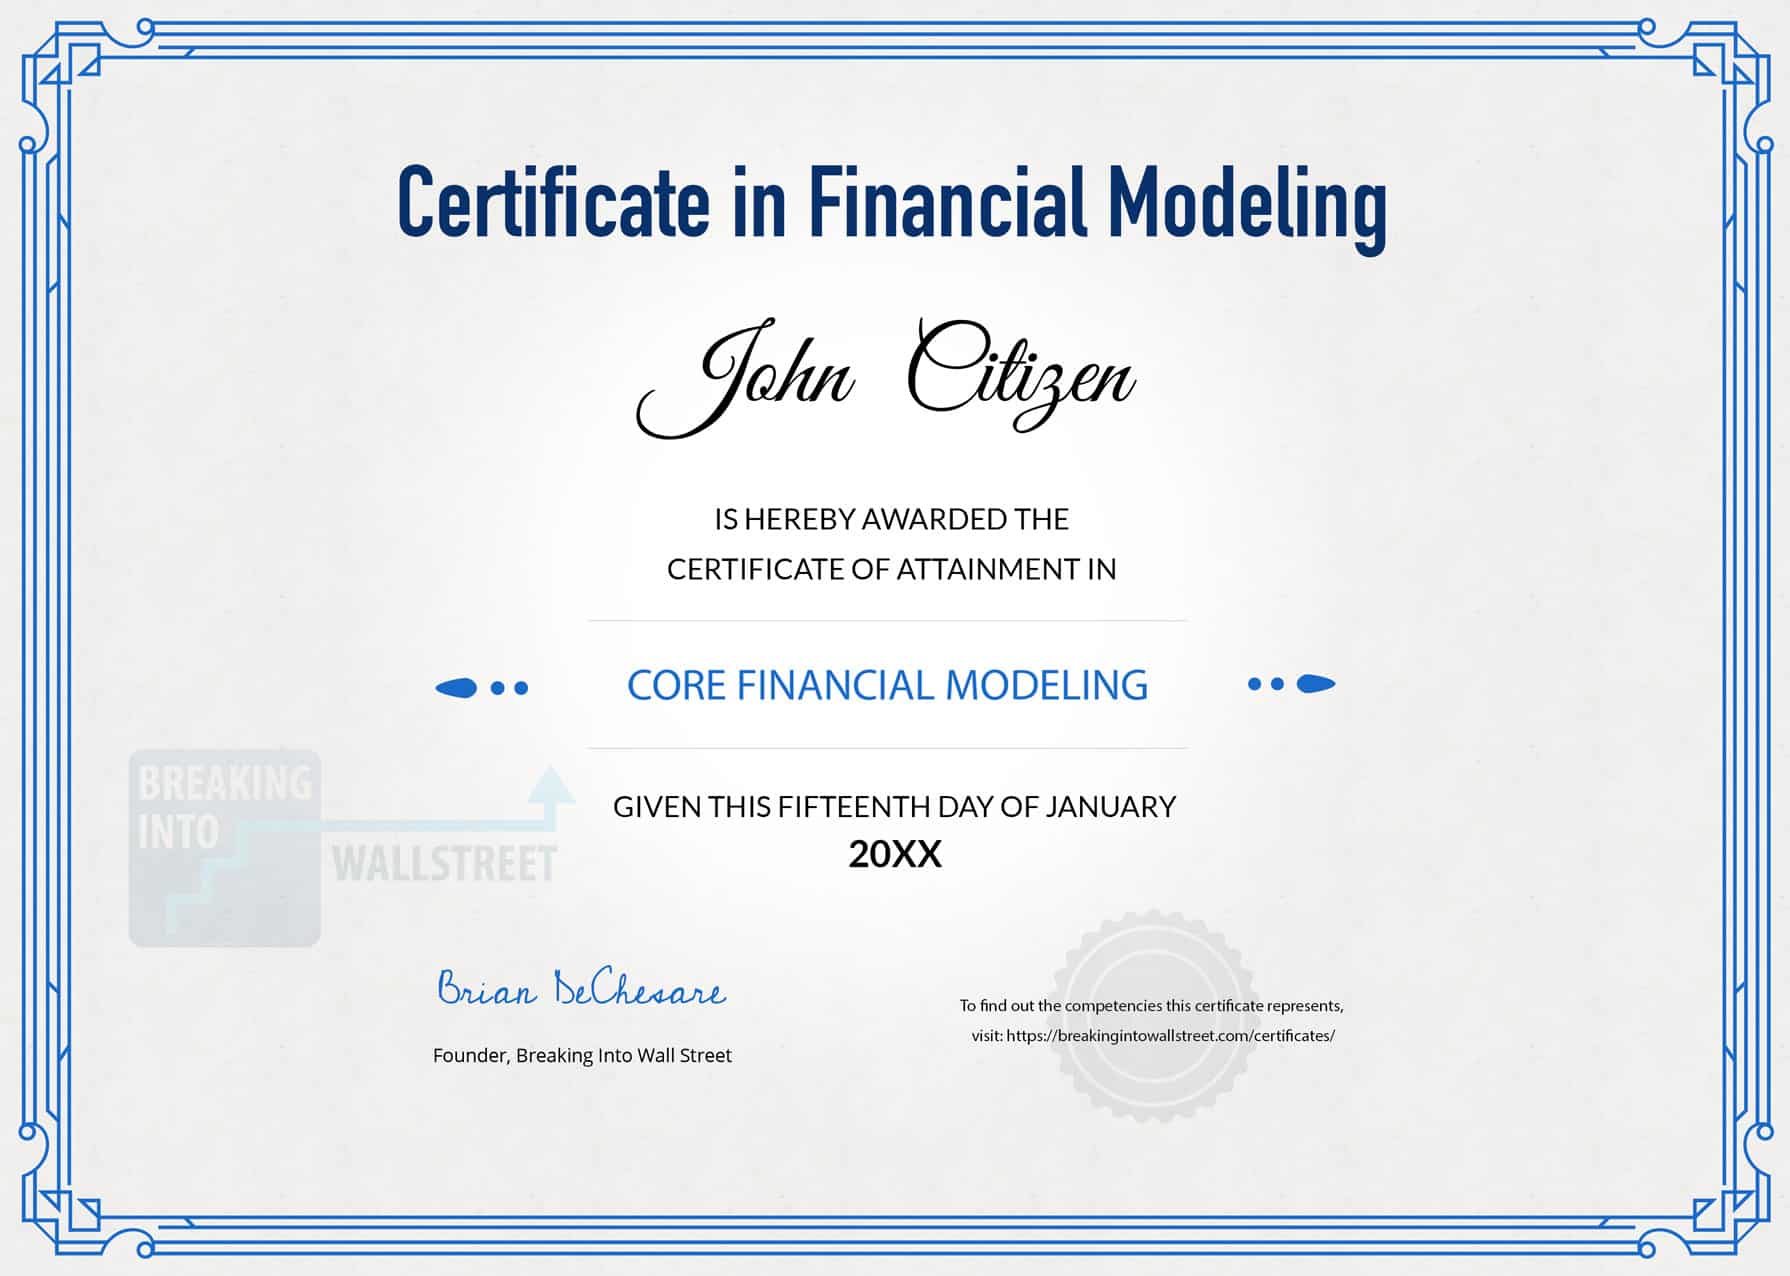 BIWS Certificate in Financial Modeling